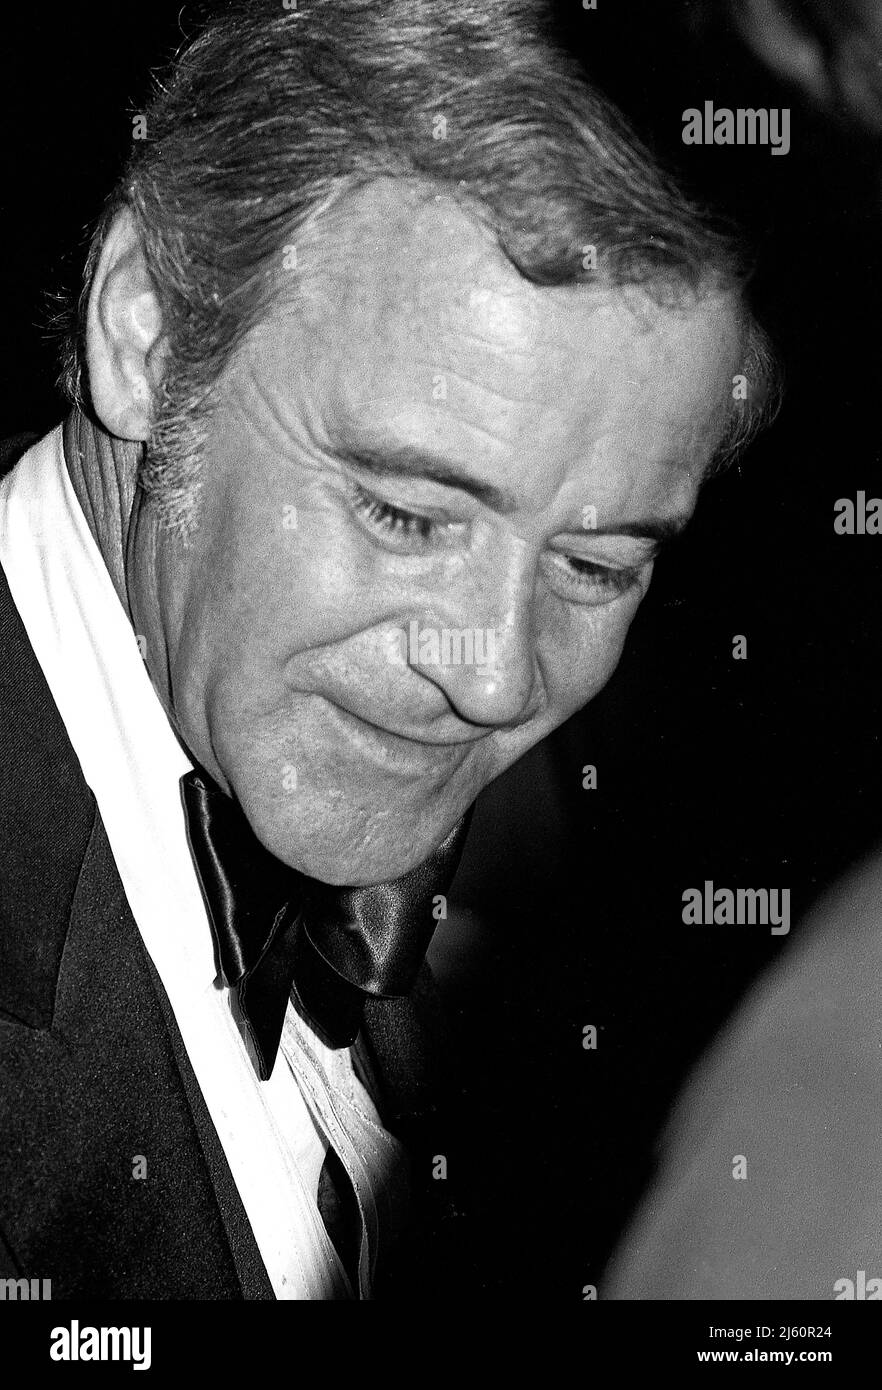 El legendario actor Jack Lemon en un estreno de Hollywood en torno a 1970s. Foto de stock